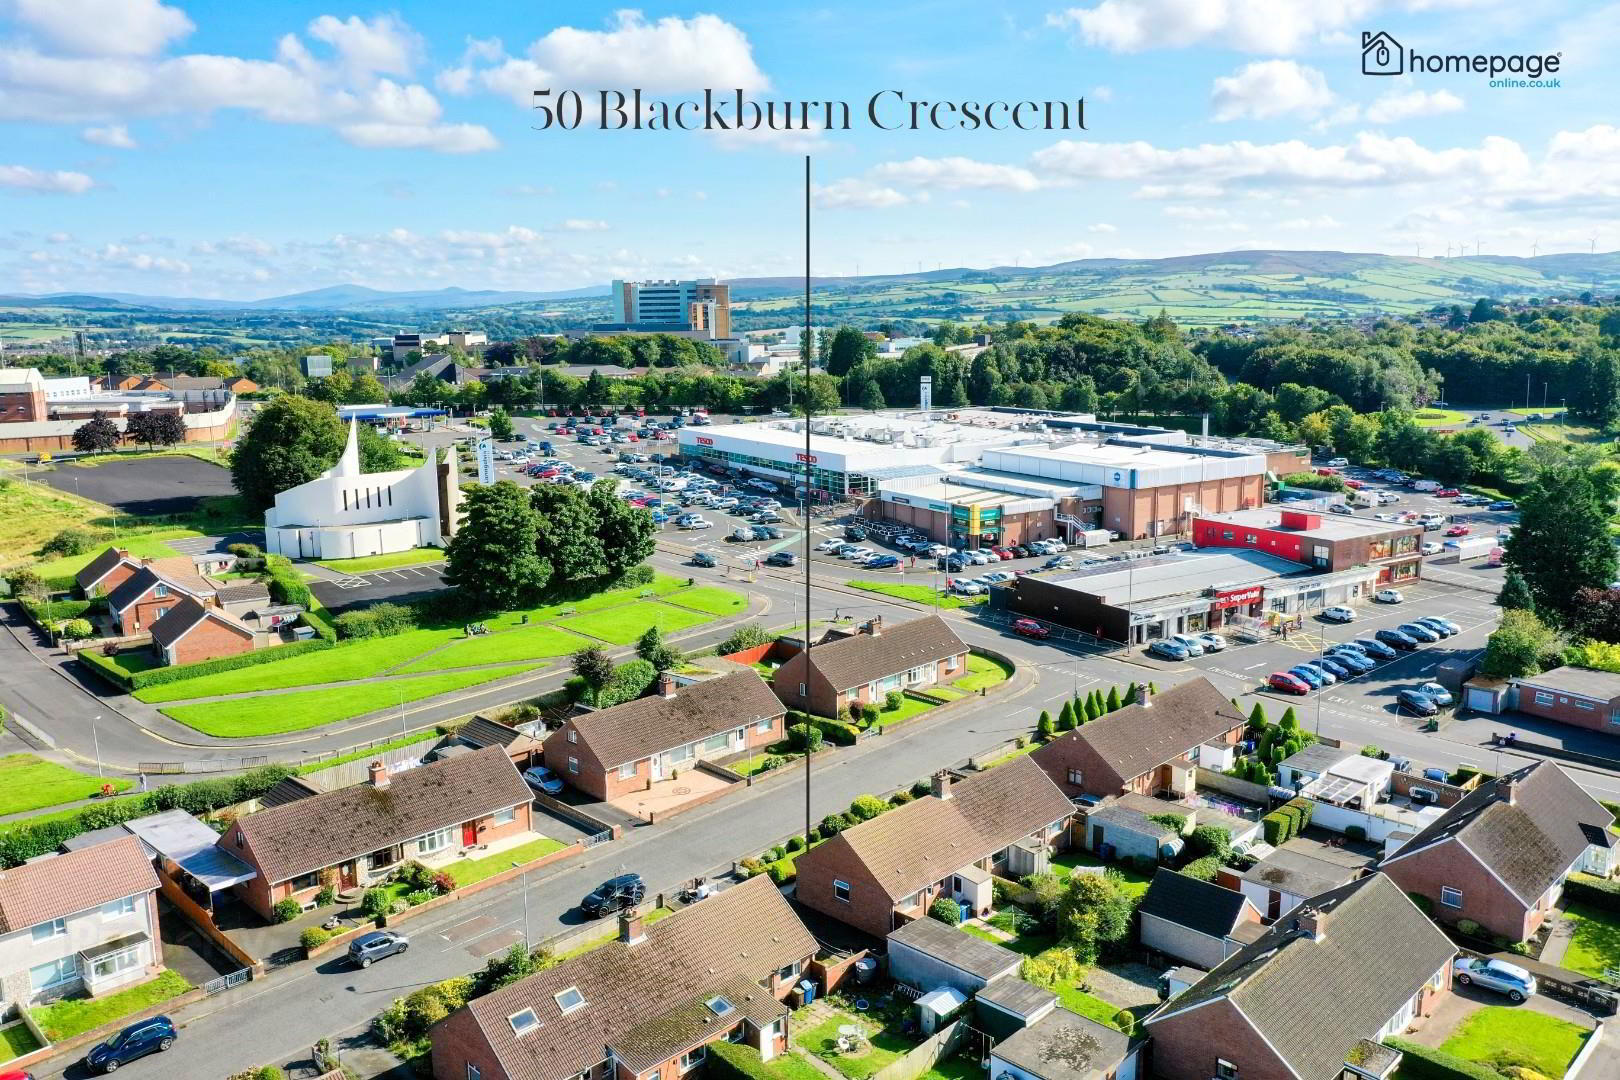 50 Blackburn Crescent